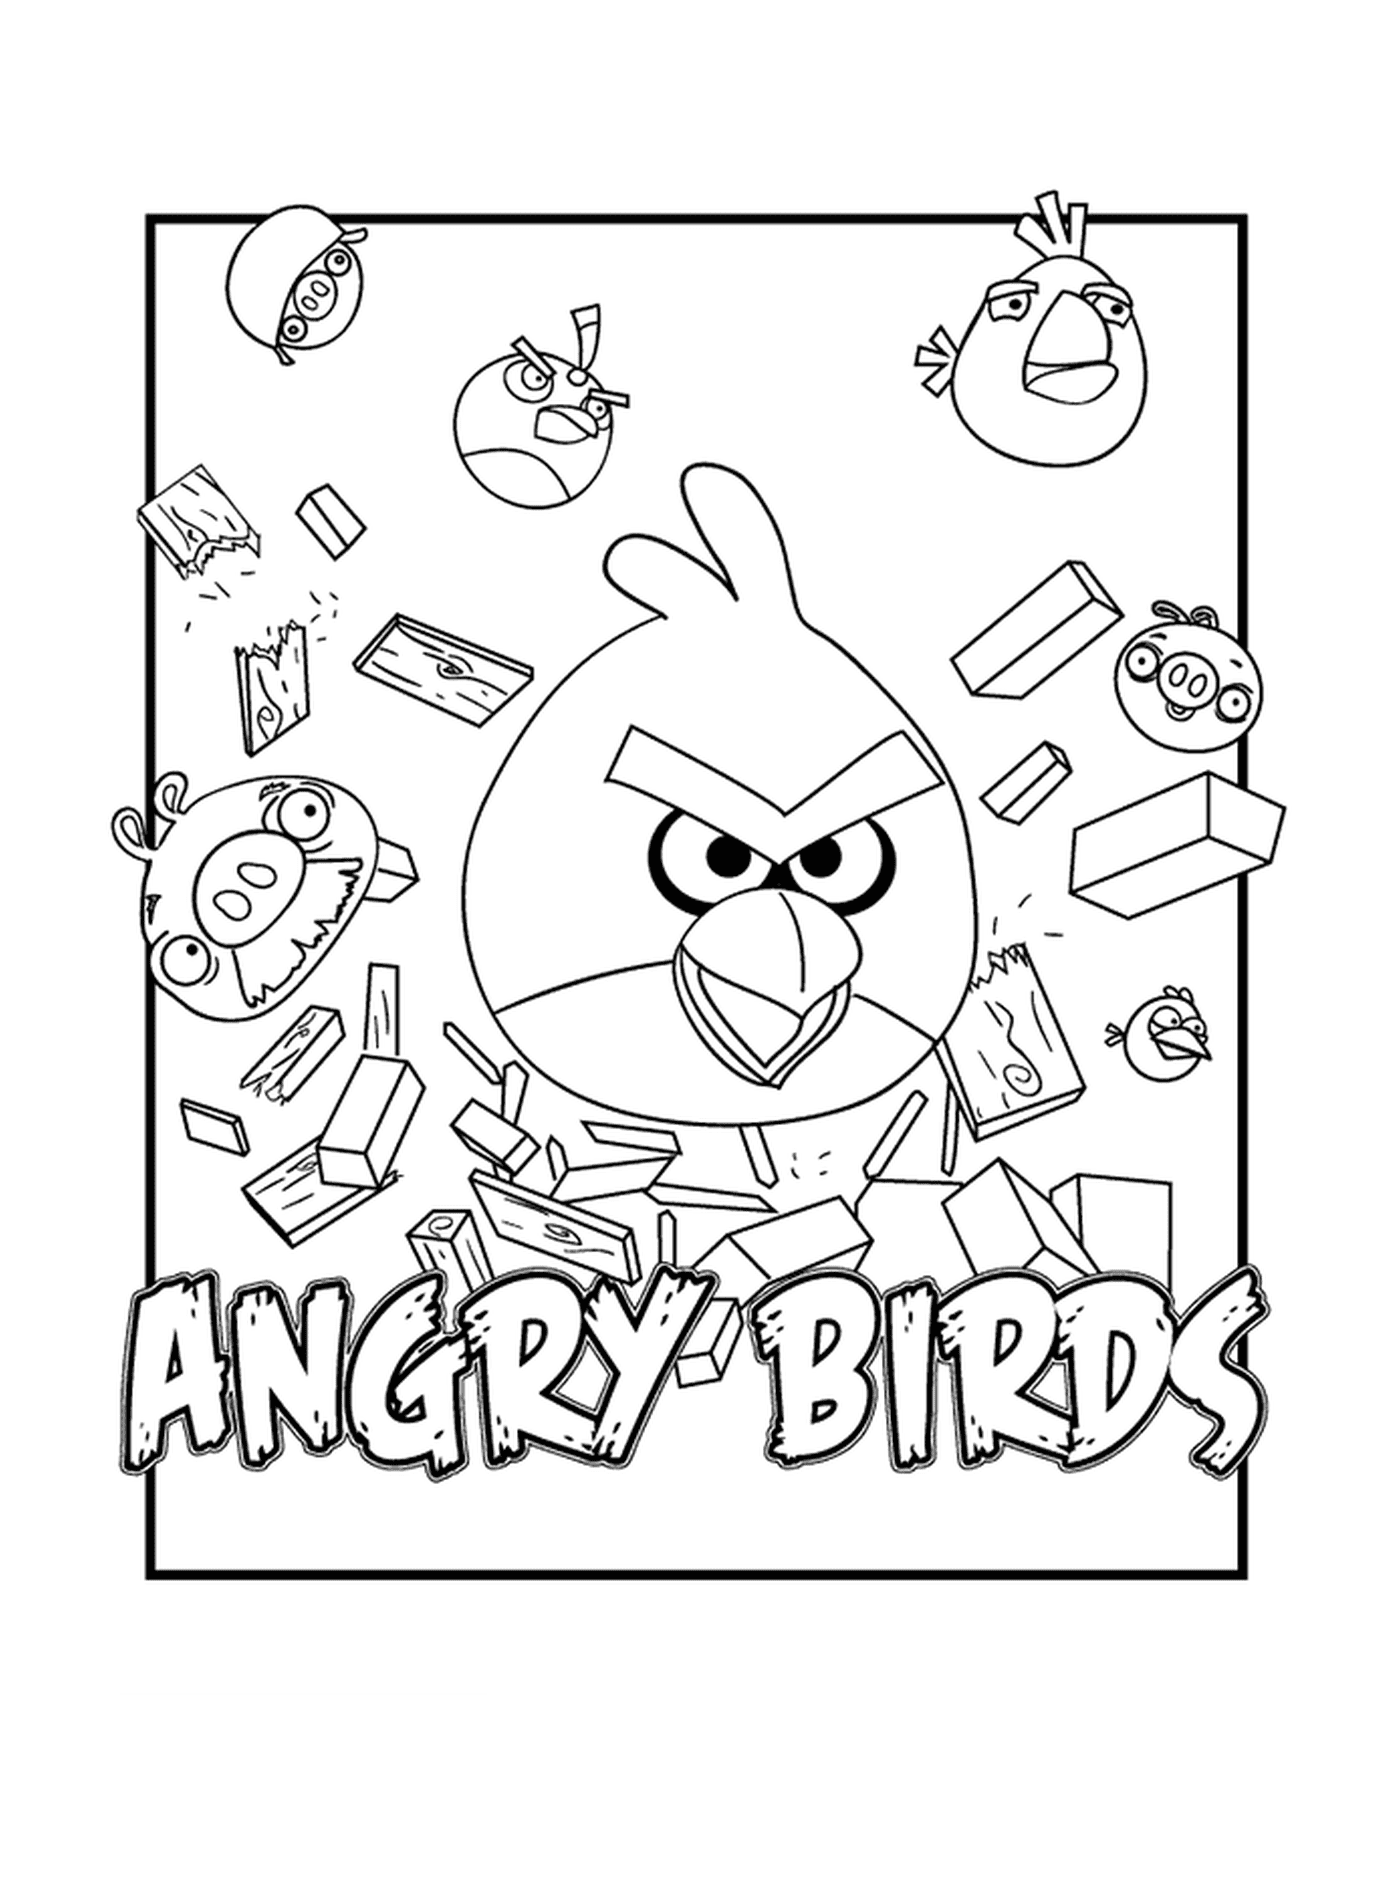  Ein Bild von Angry Birds, das alles bricht 